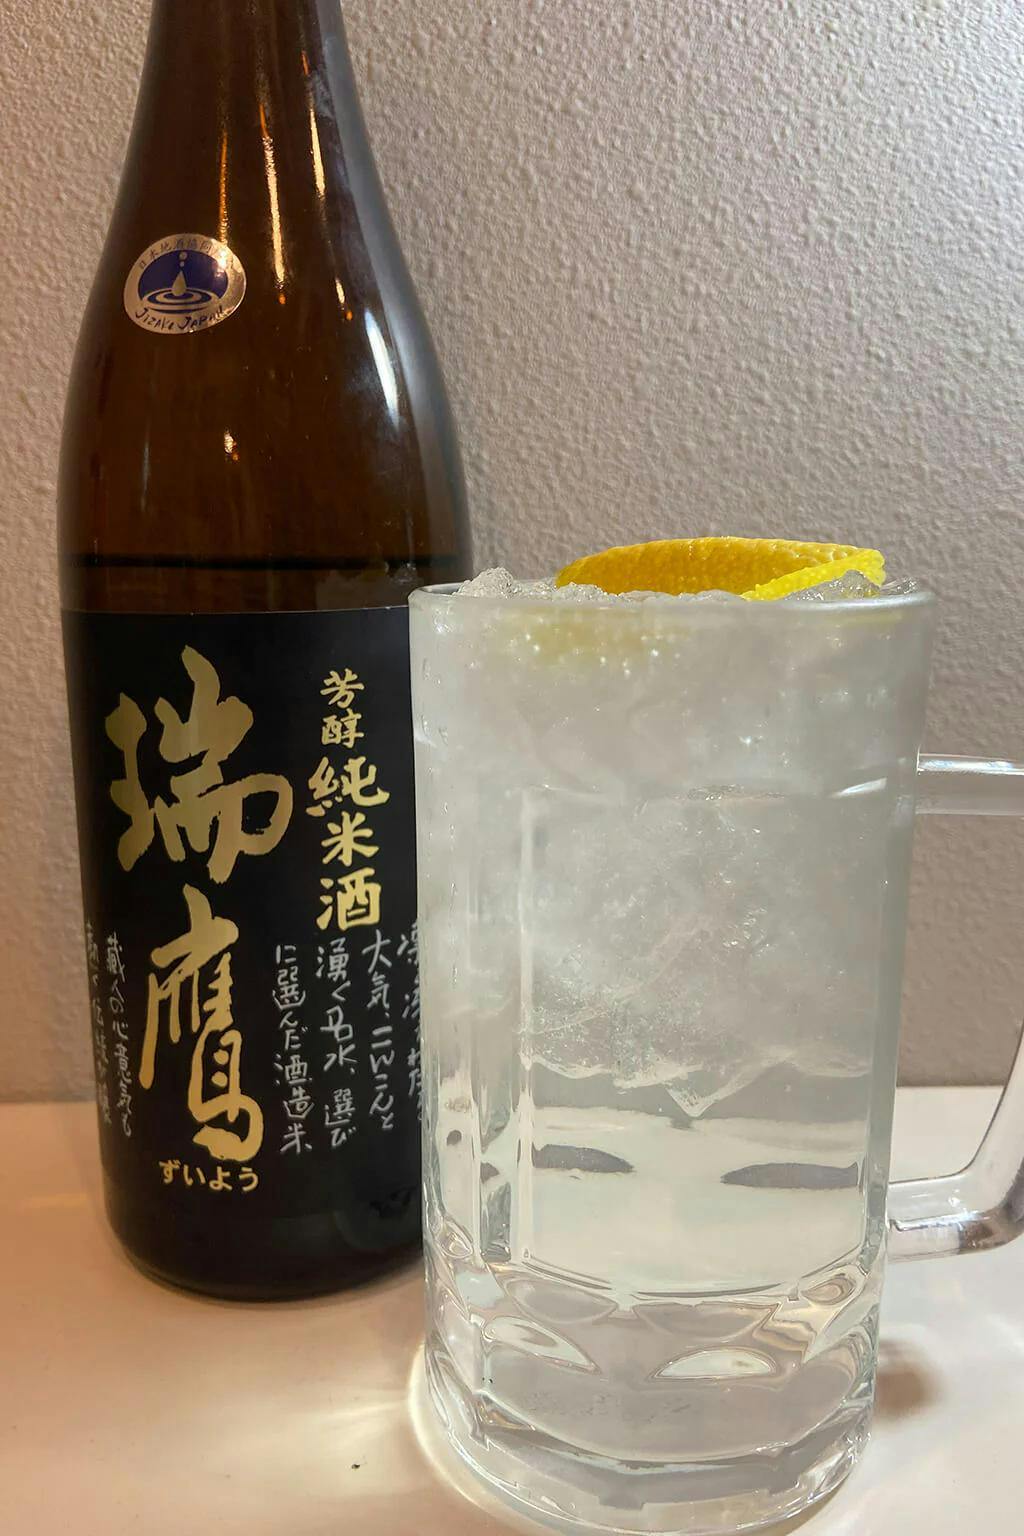 Zuiyo “Hojun” in a beer glass